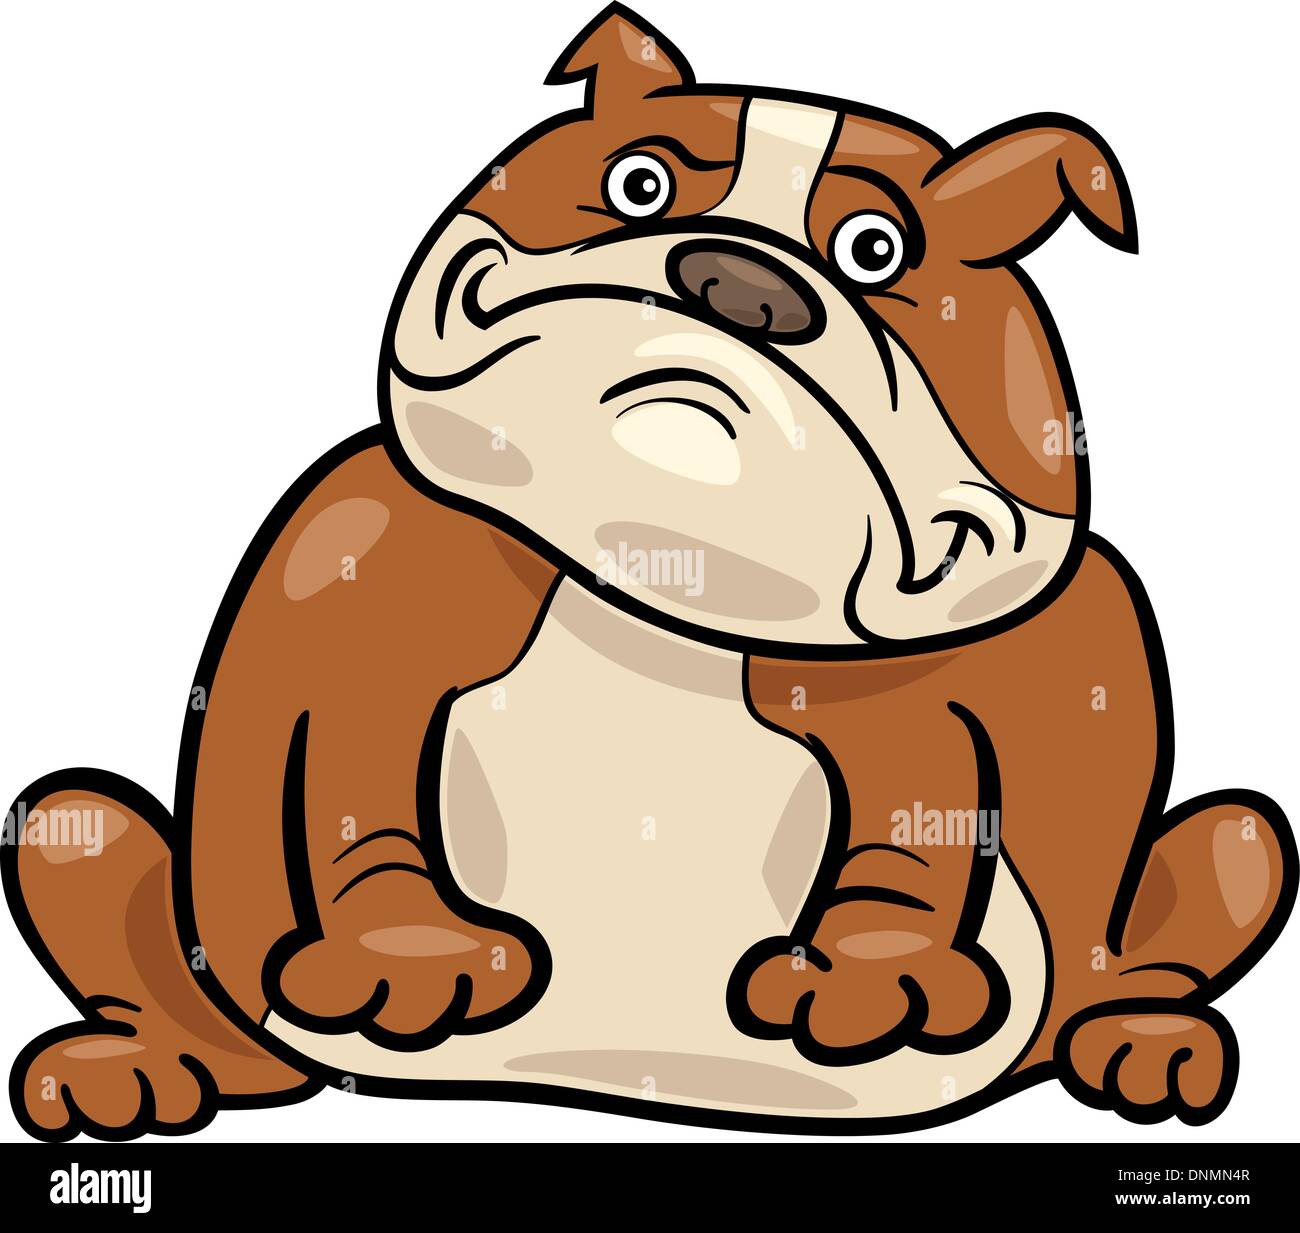 Cartoon Illustration of Funny Purebred English Bulldog Dog Stock Vector